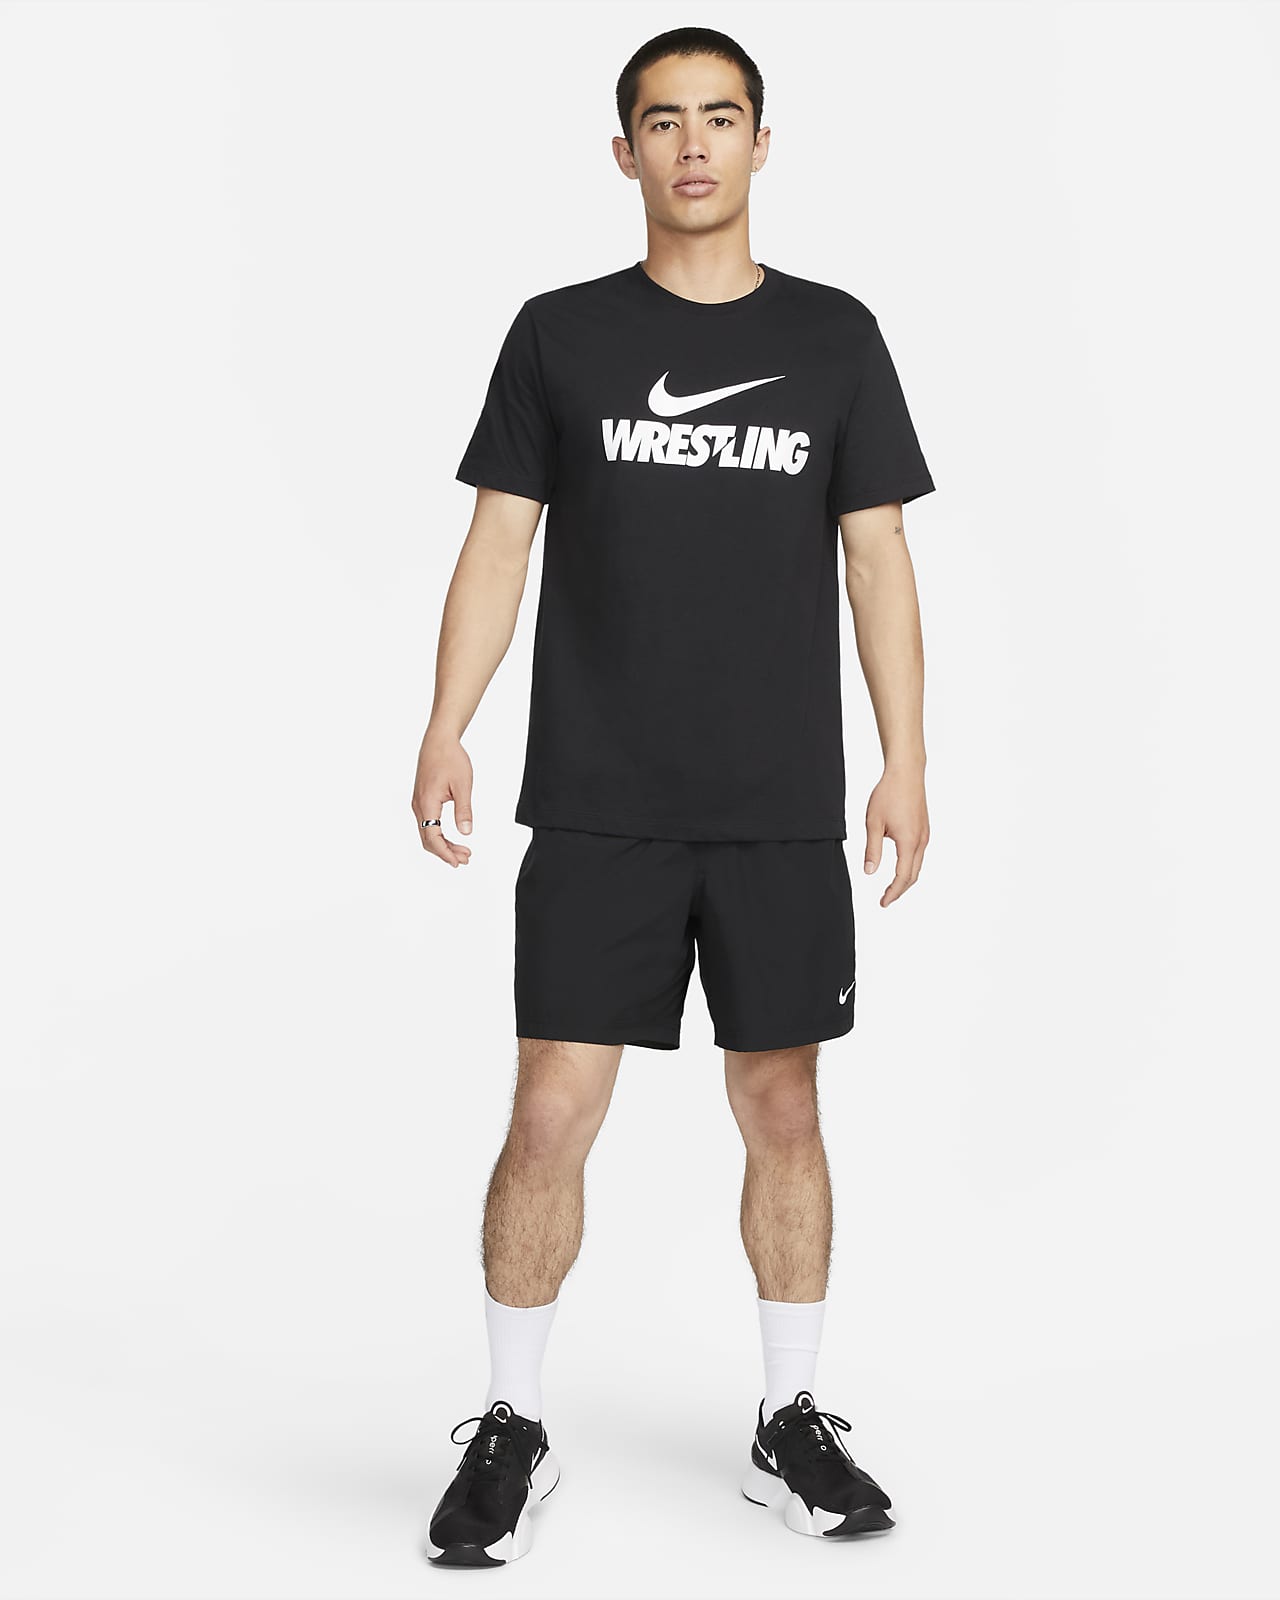 Nike Wrestling Men's T-Shirt.